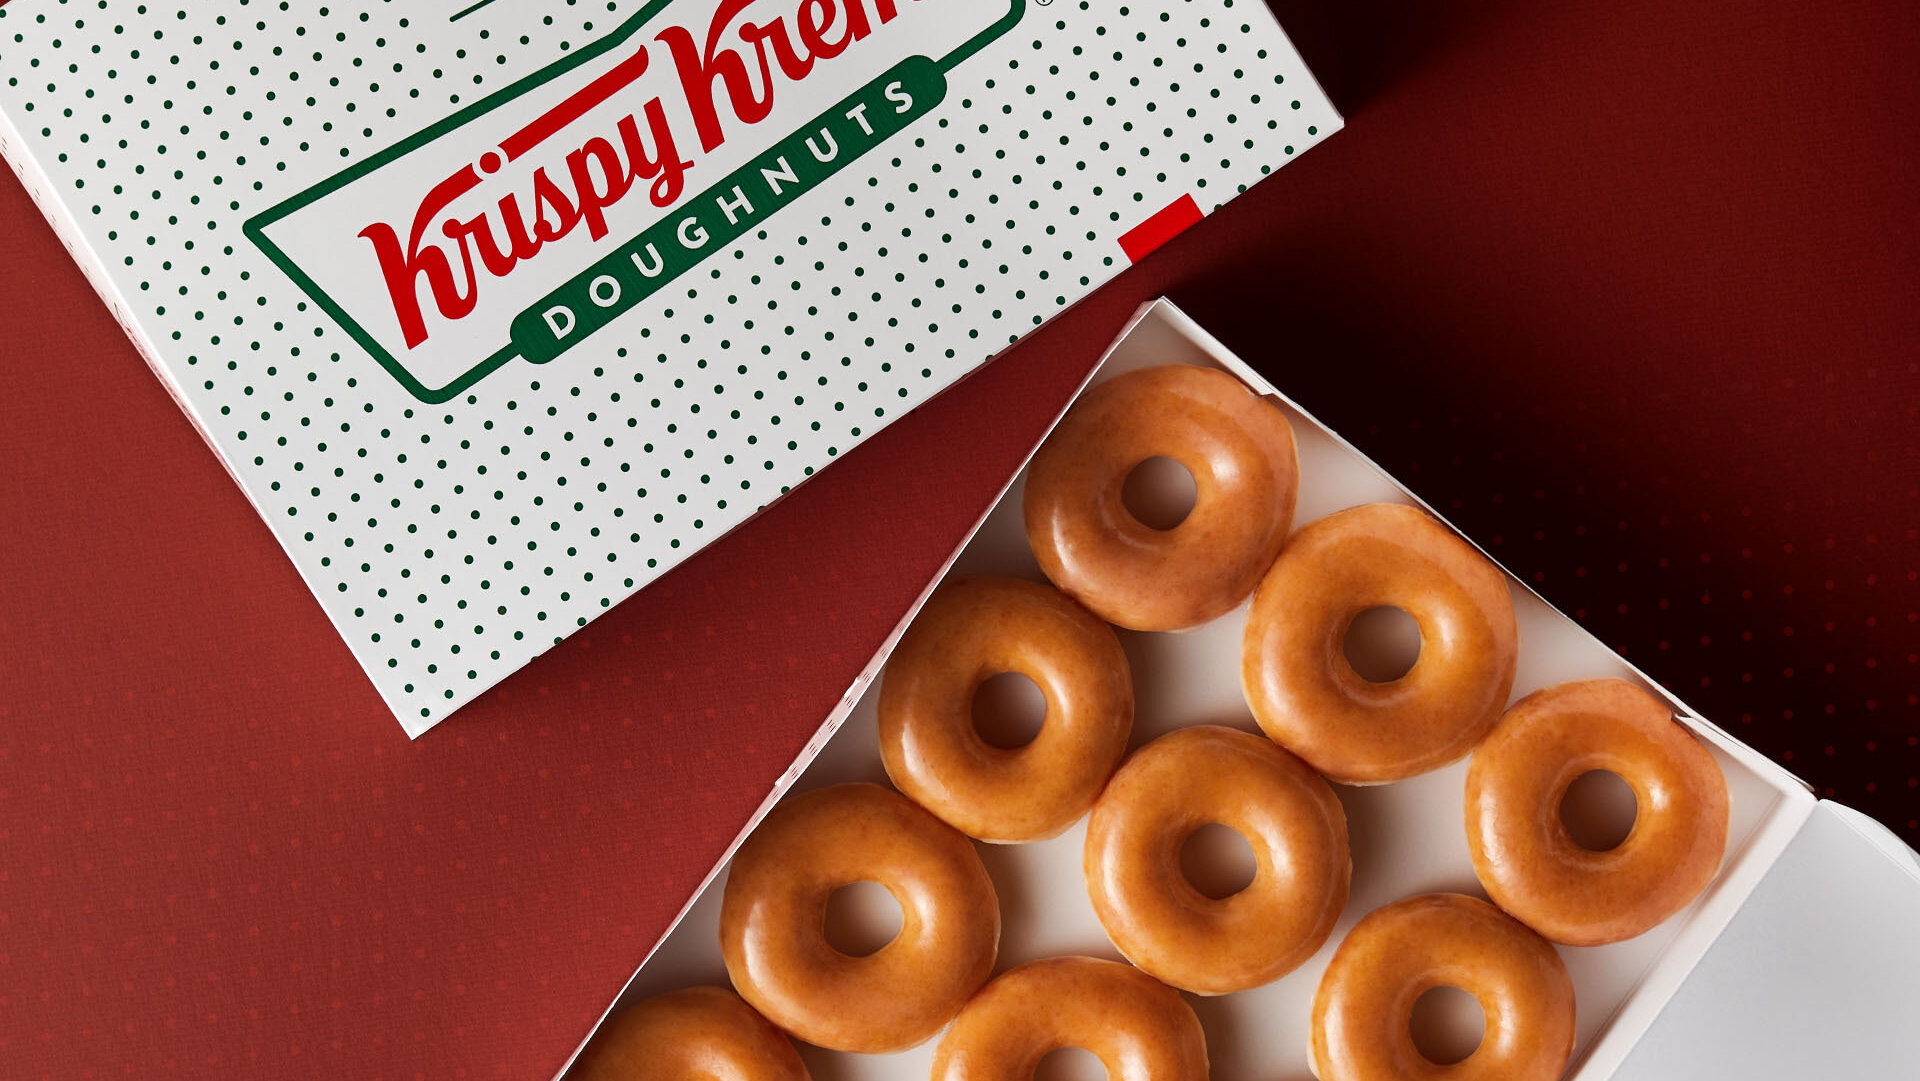 A dozen Krispy Kreme original glazed donuts in box